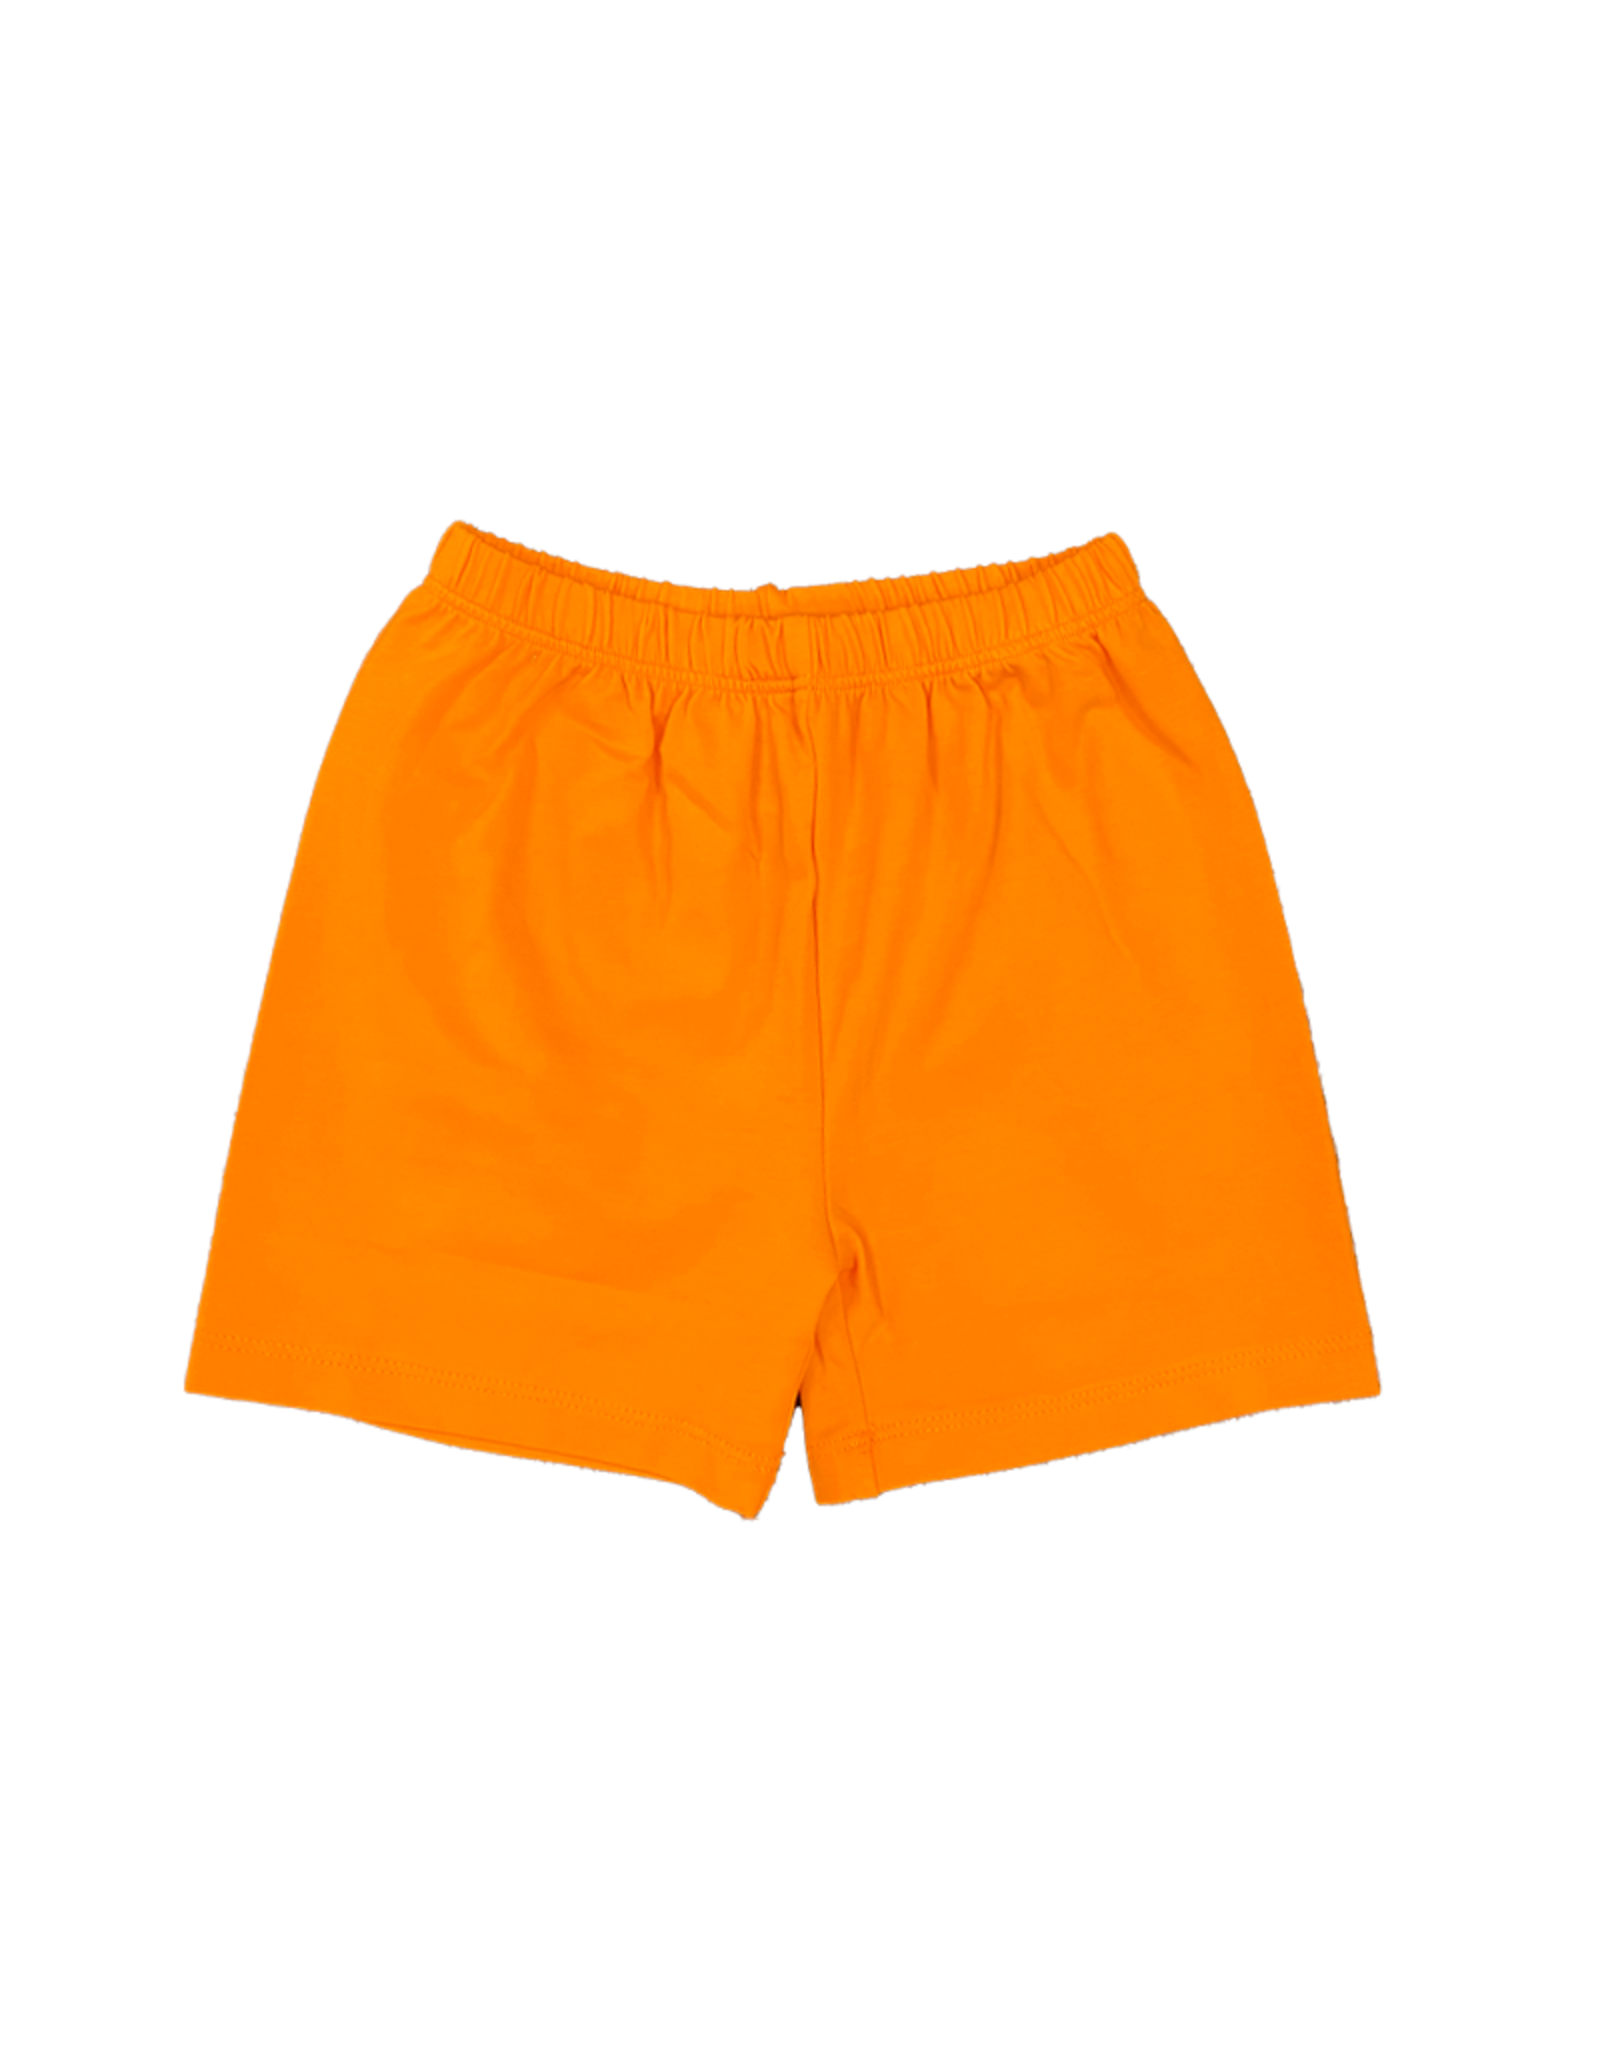 Ishtex 2F029 Grey/Orange Dog Short Set